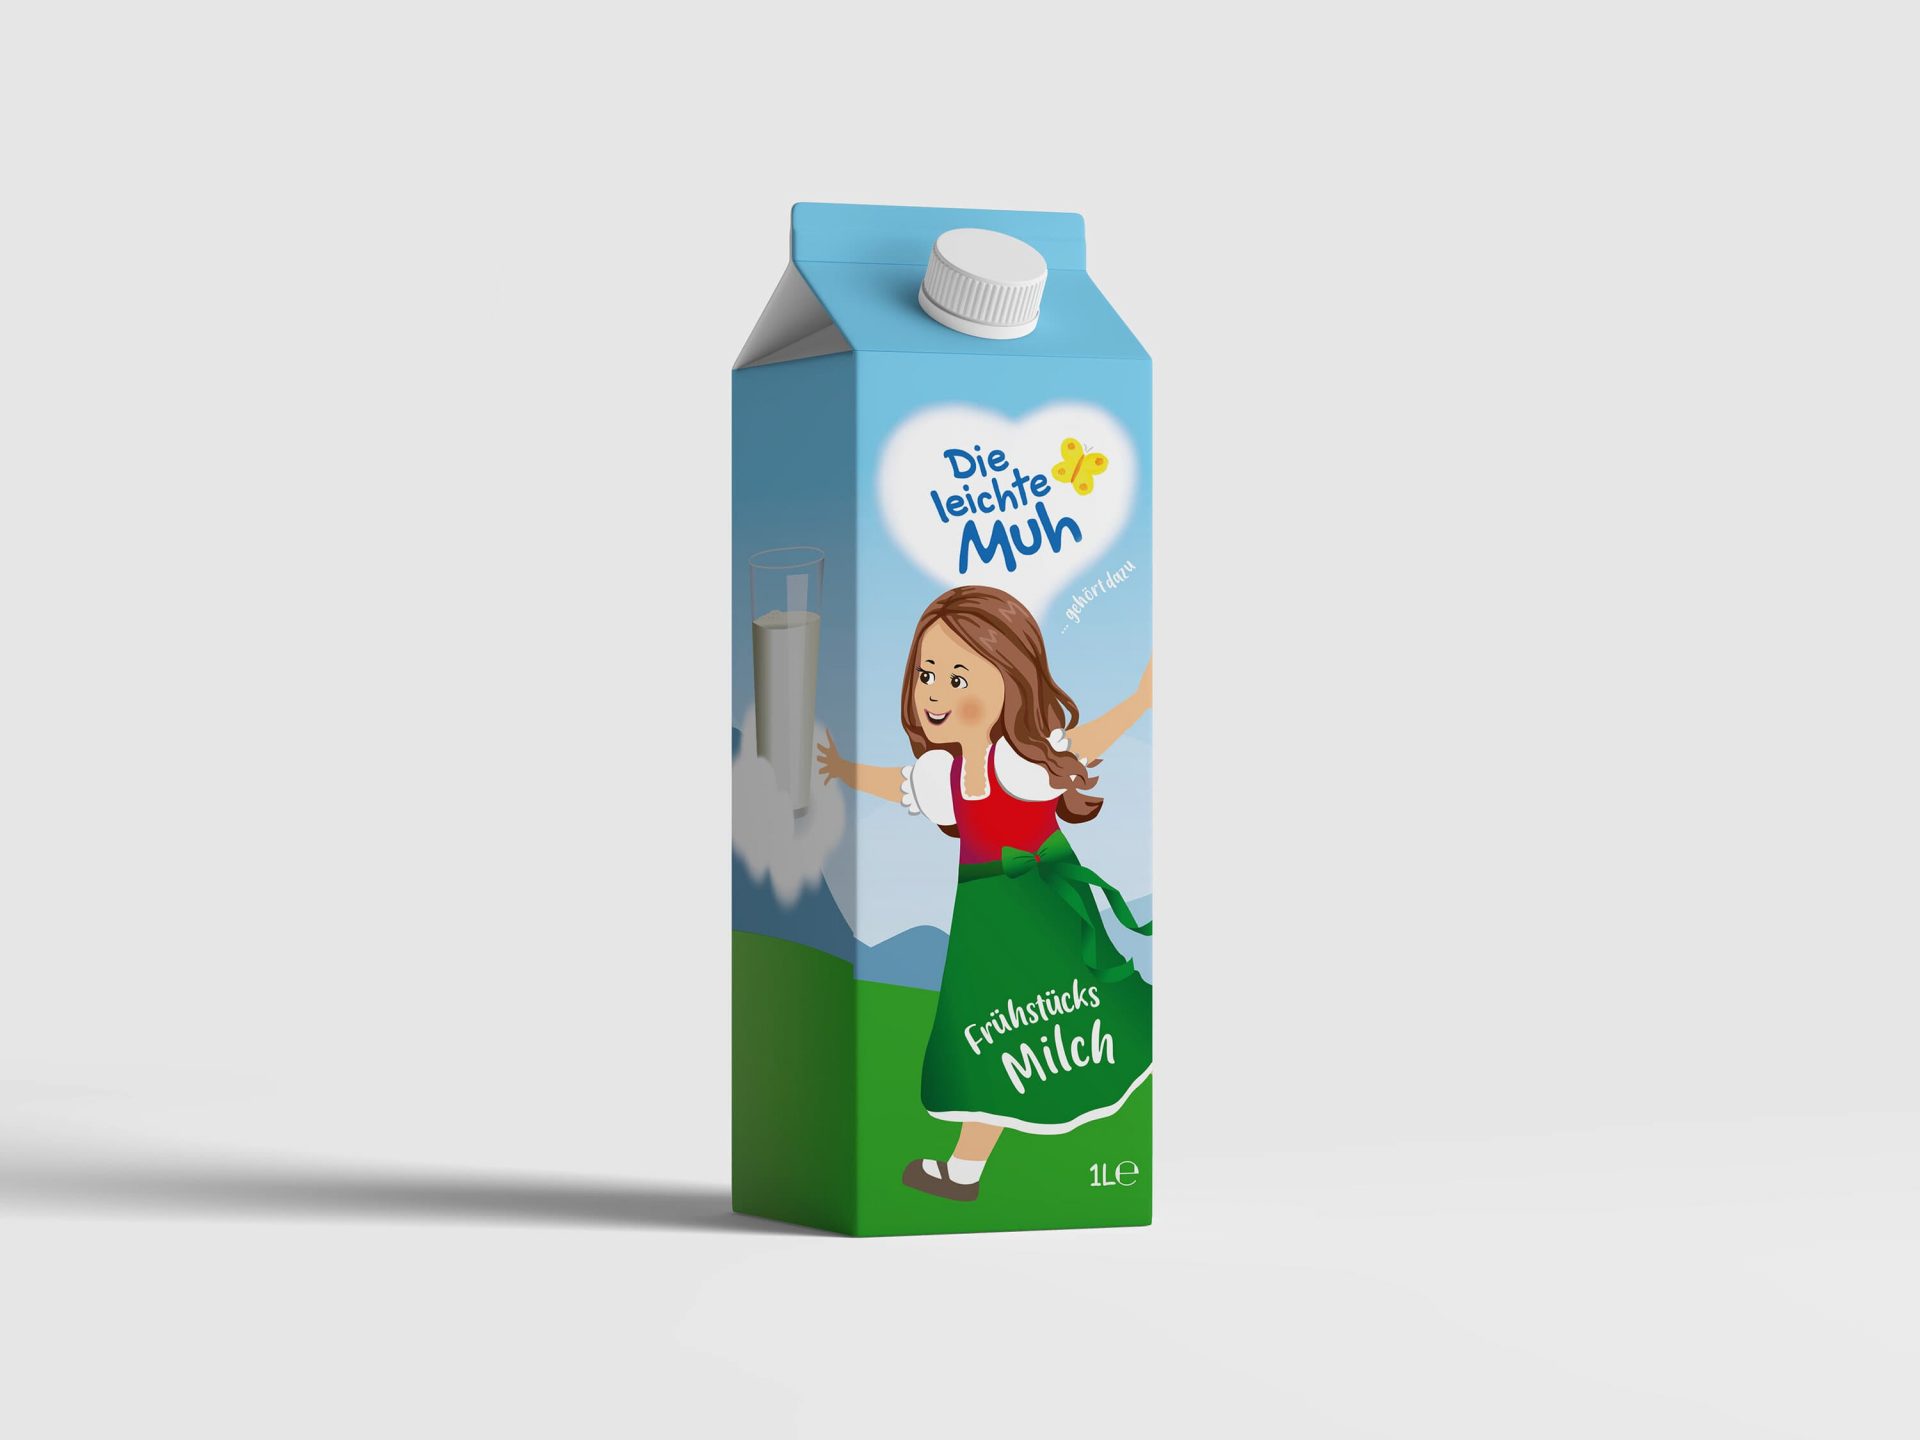 Milchverpackung für Maresi Austria GmbH